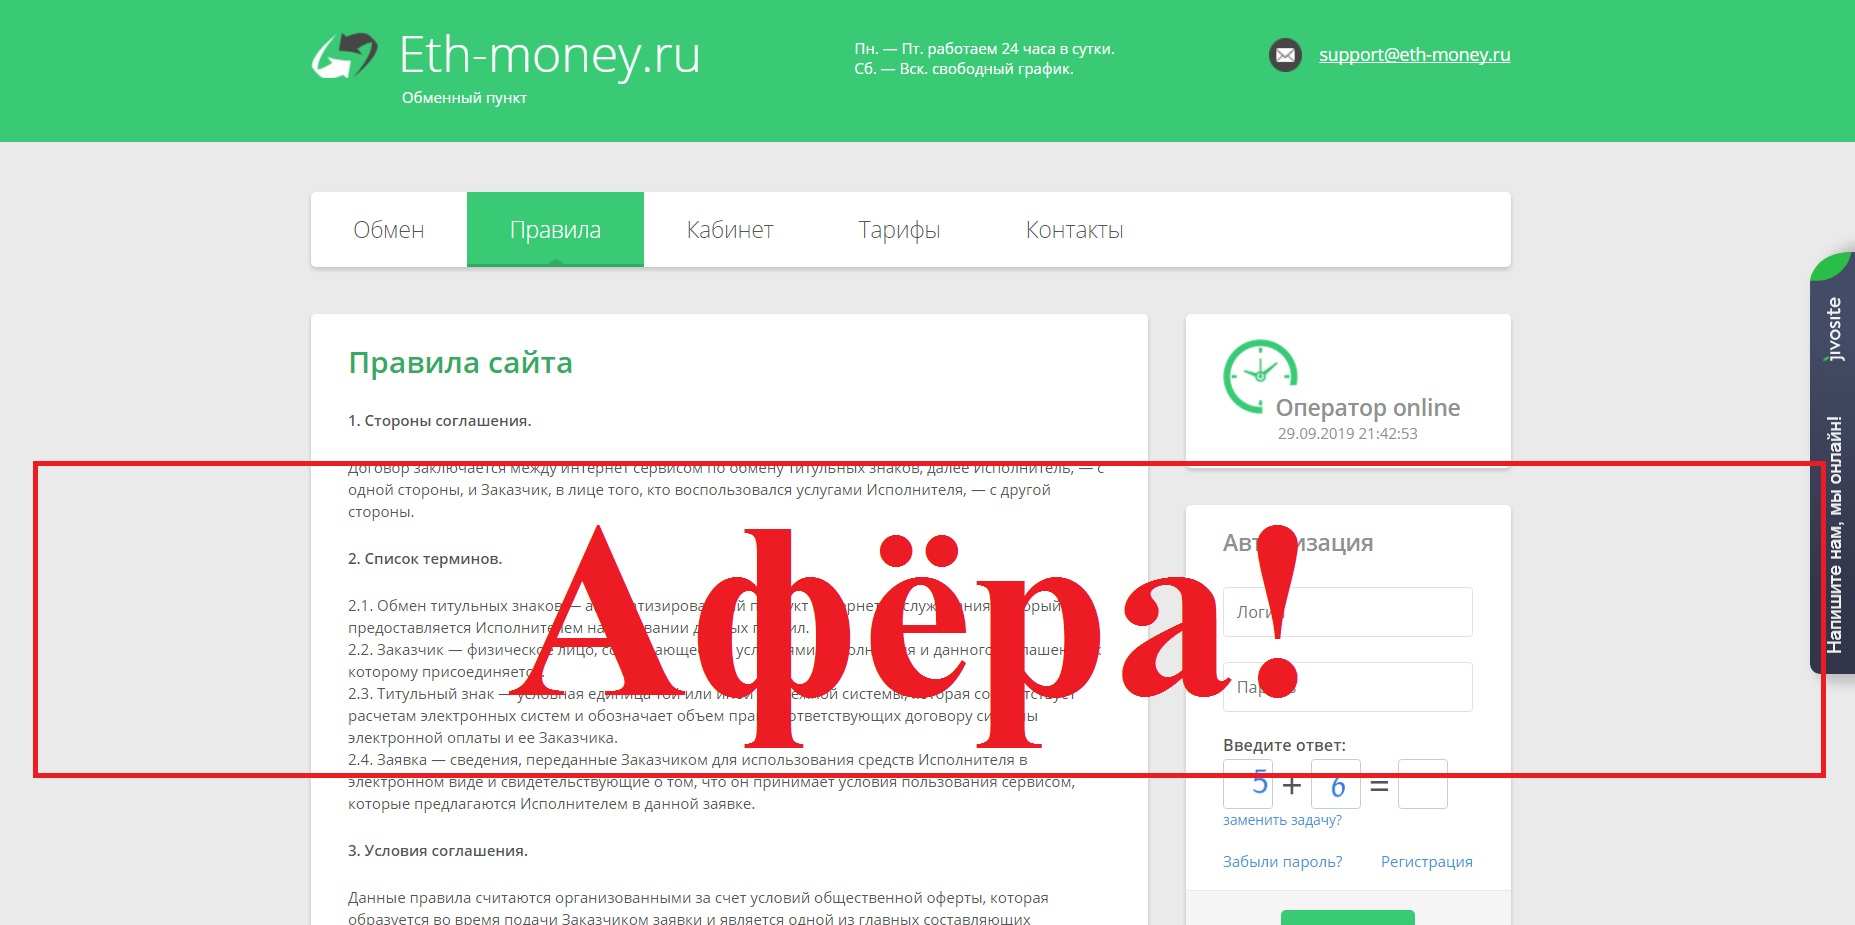 Eth-money.ru – отзывы и обзор обменника